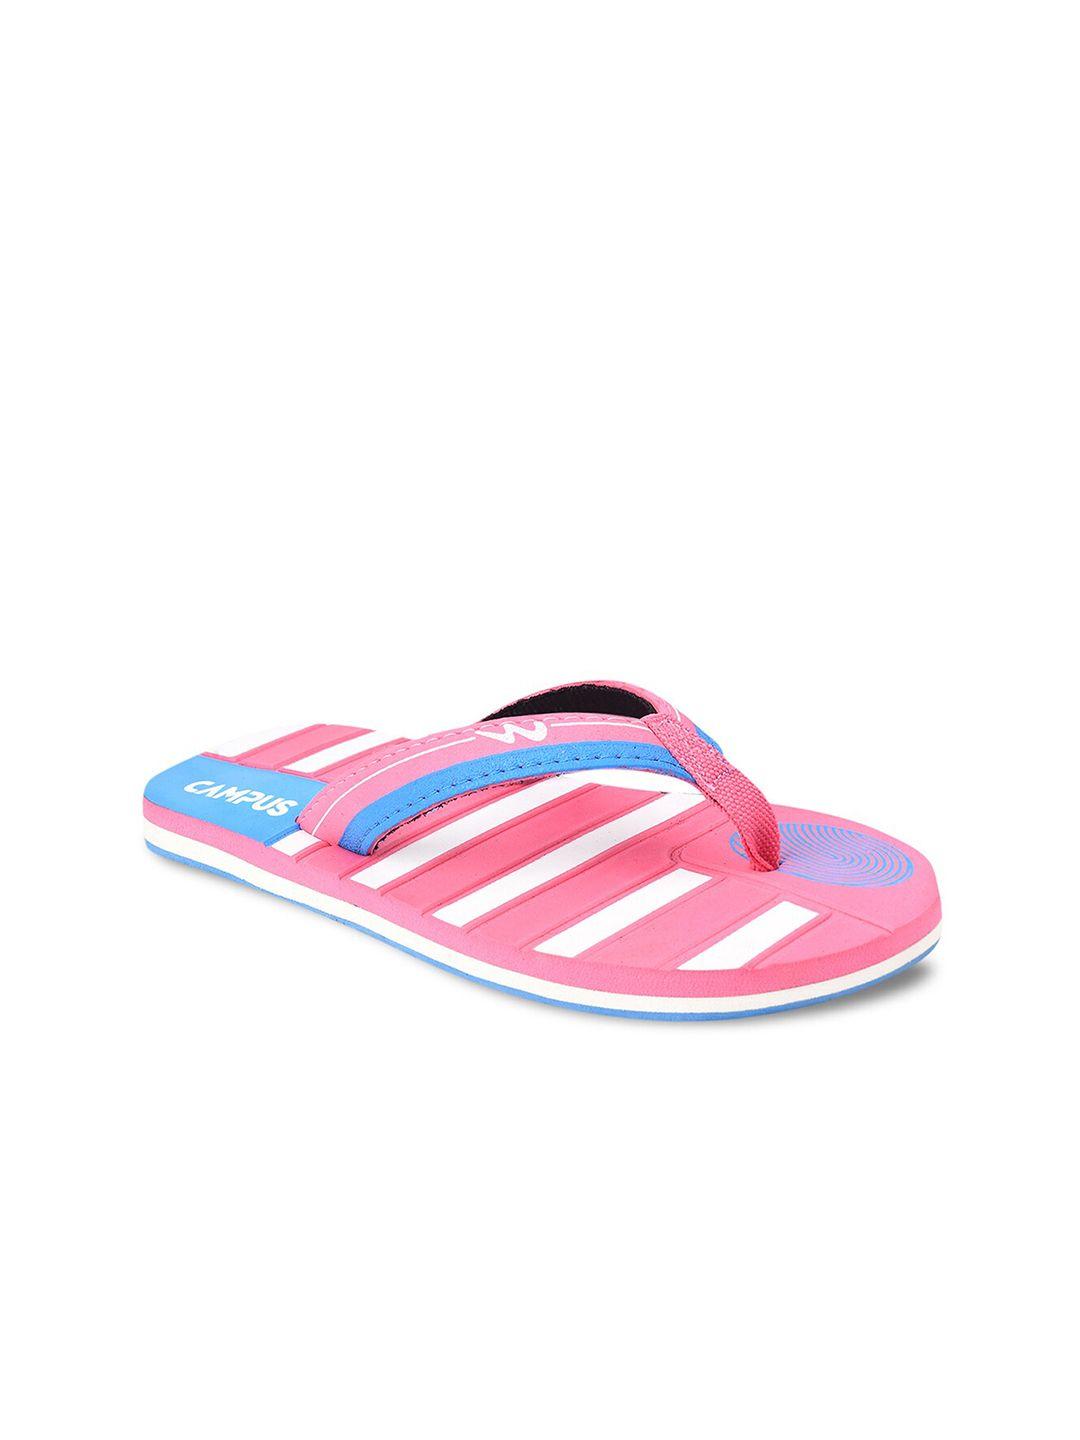 campus women pink & blue striped flip flops